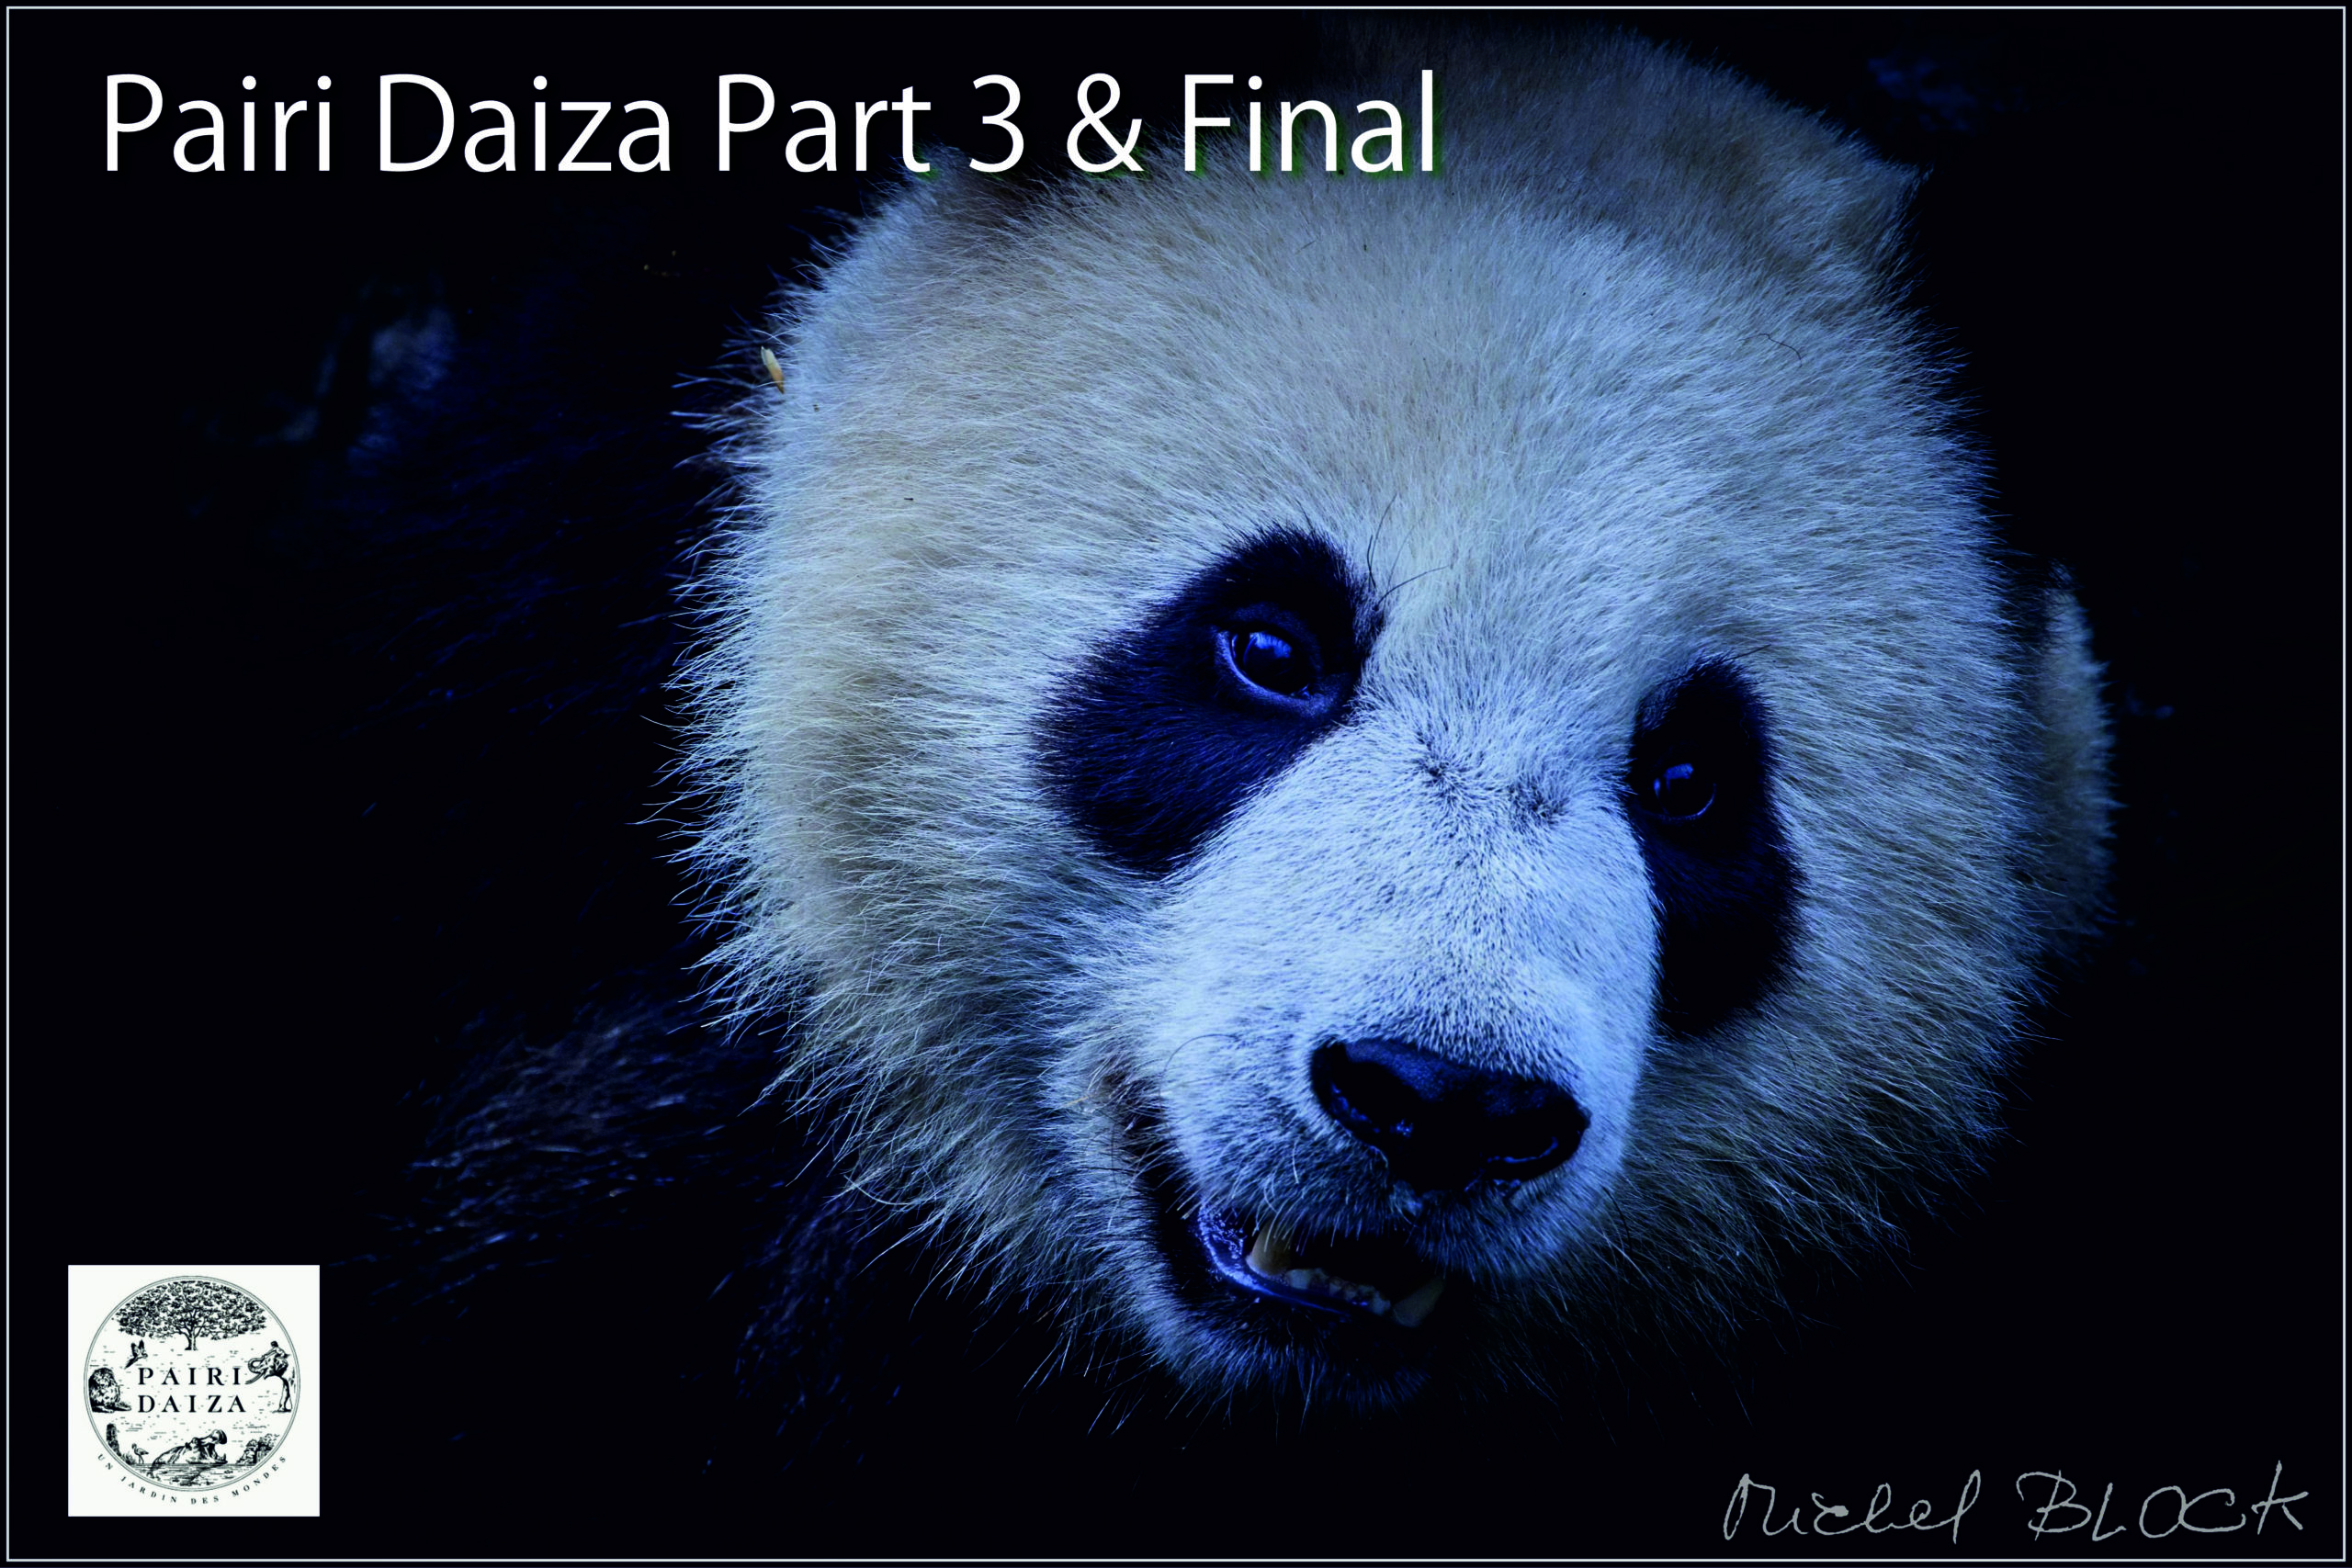 Pairi Daisa Part 3 & final